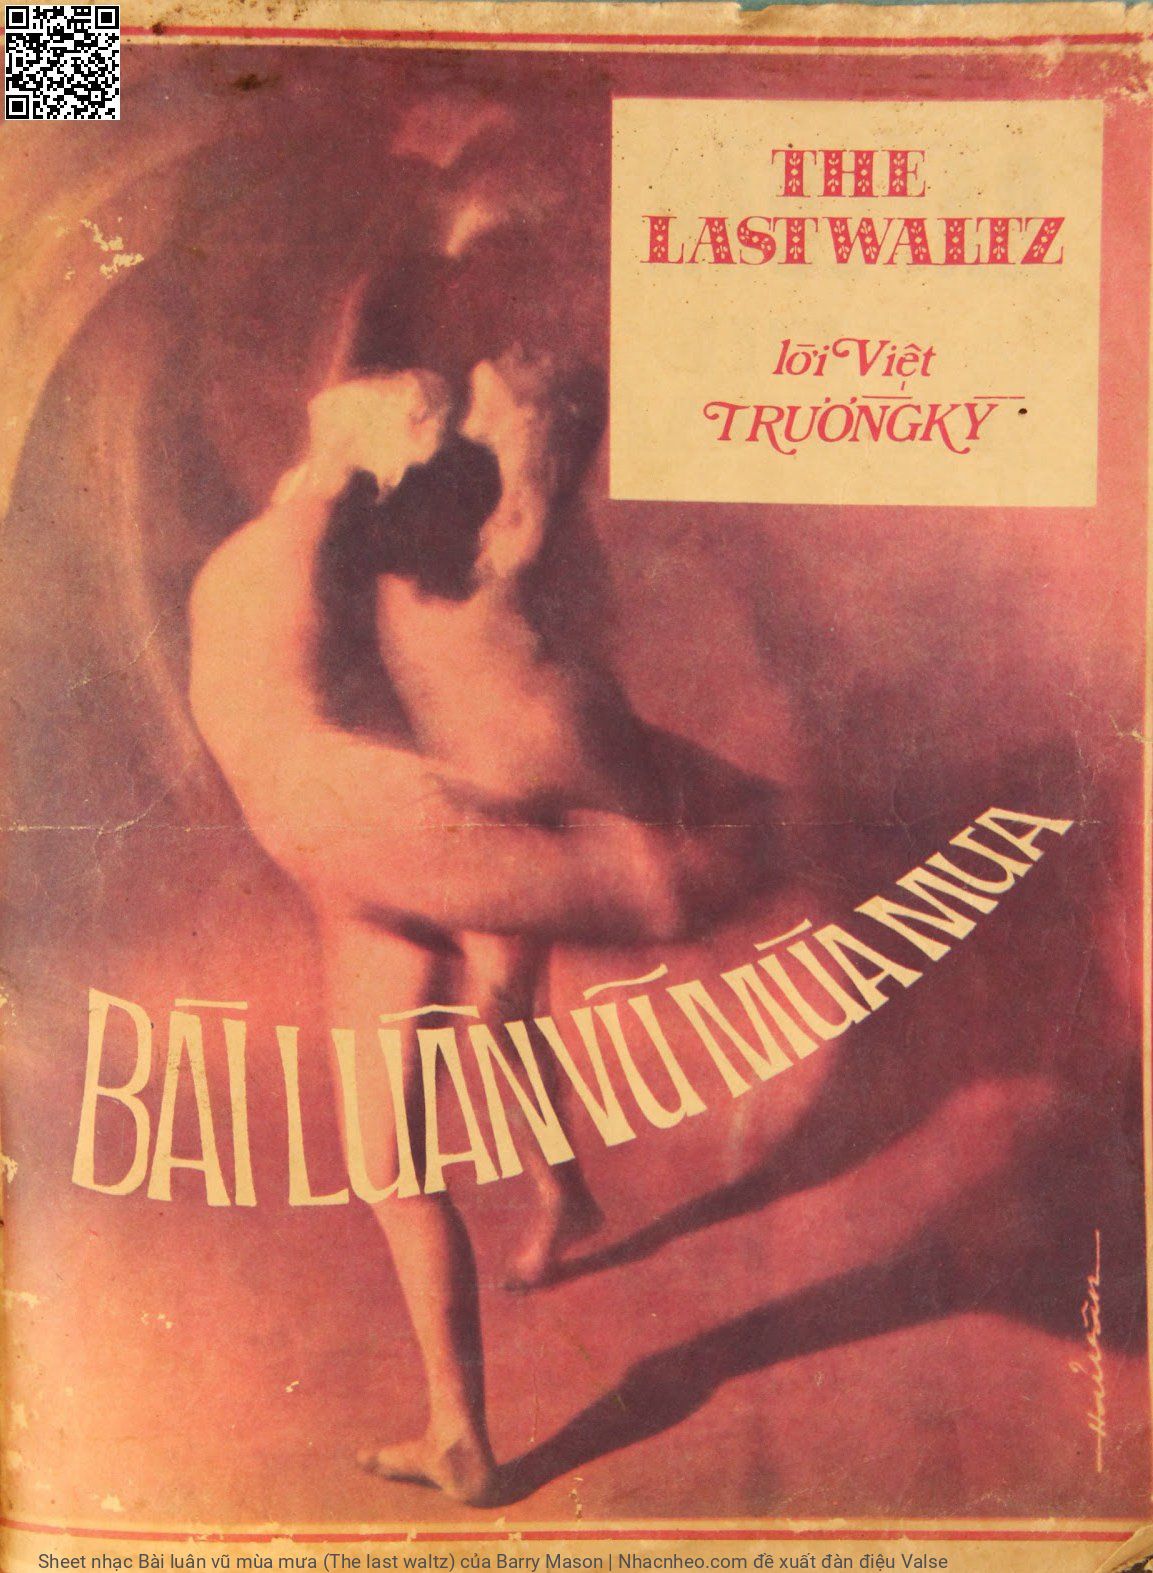 Sheet nhạc Bài luân vũ mùa mưa (The last waltz)